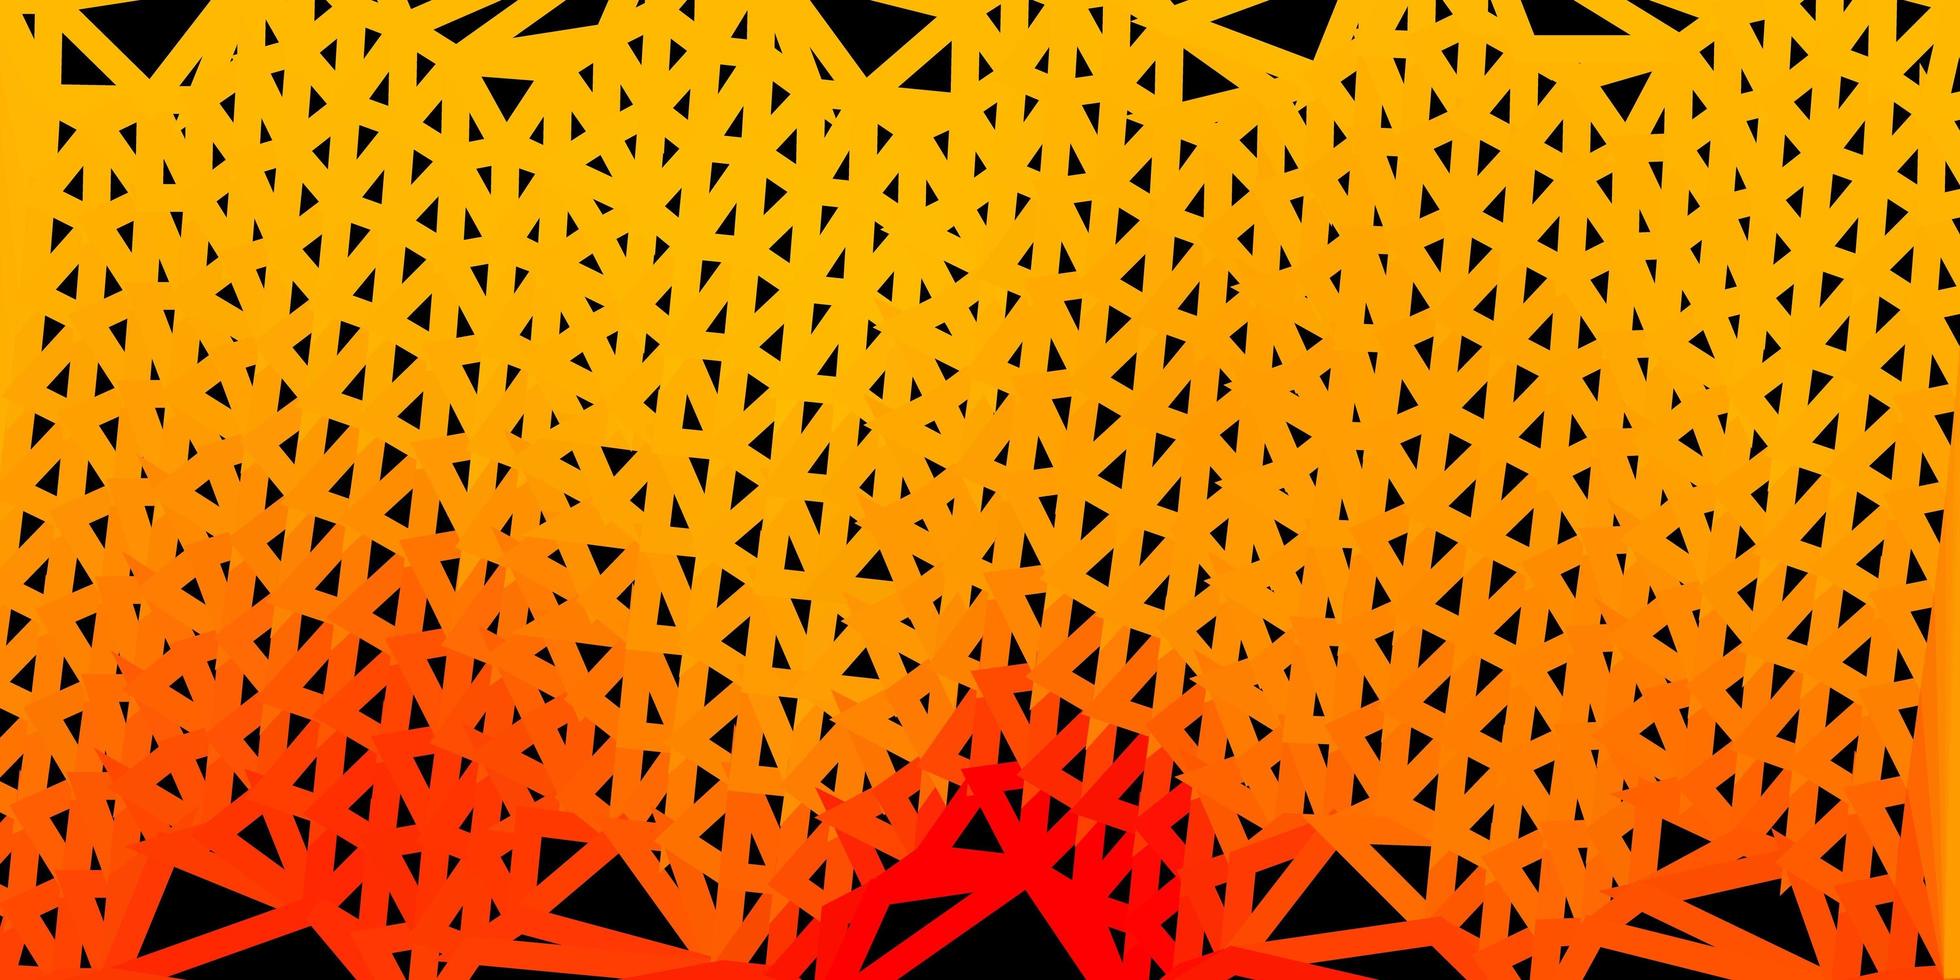 sfondo poligonale vettoriale arancione chiaro.